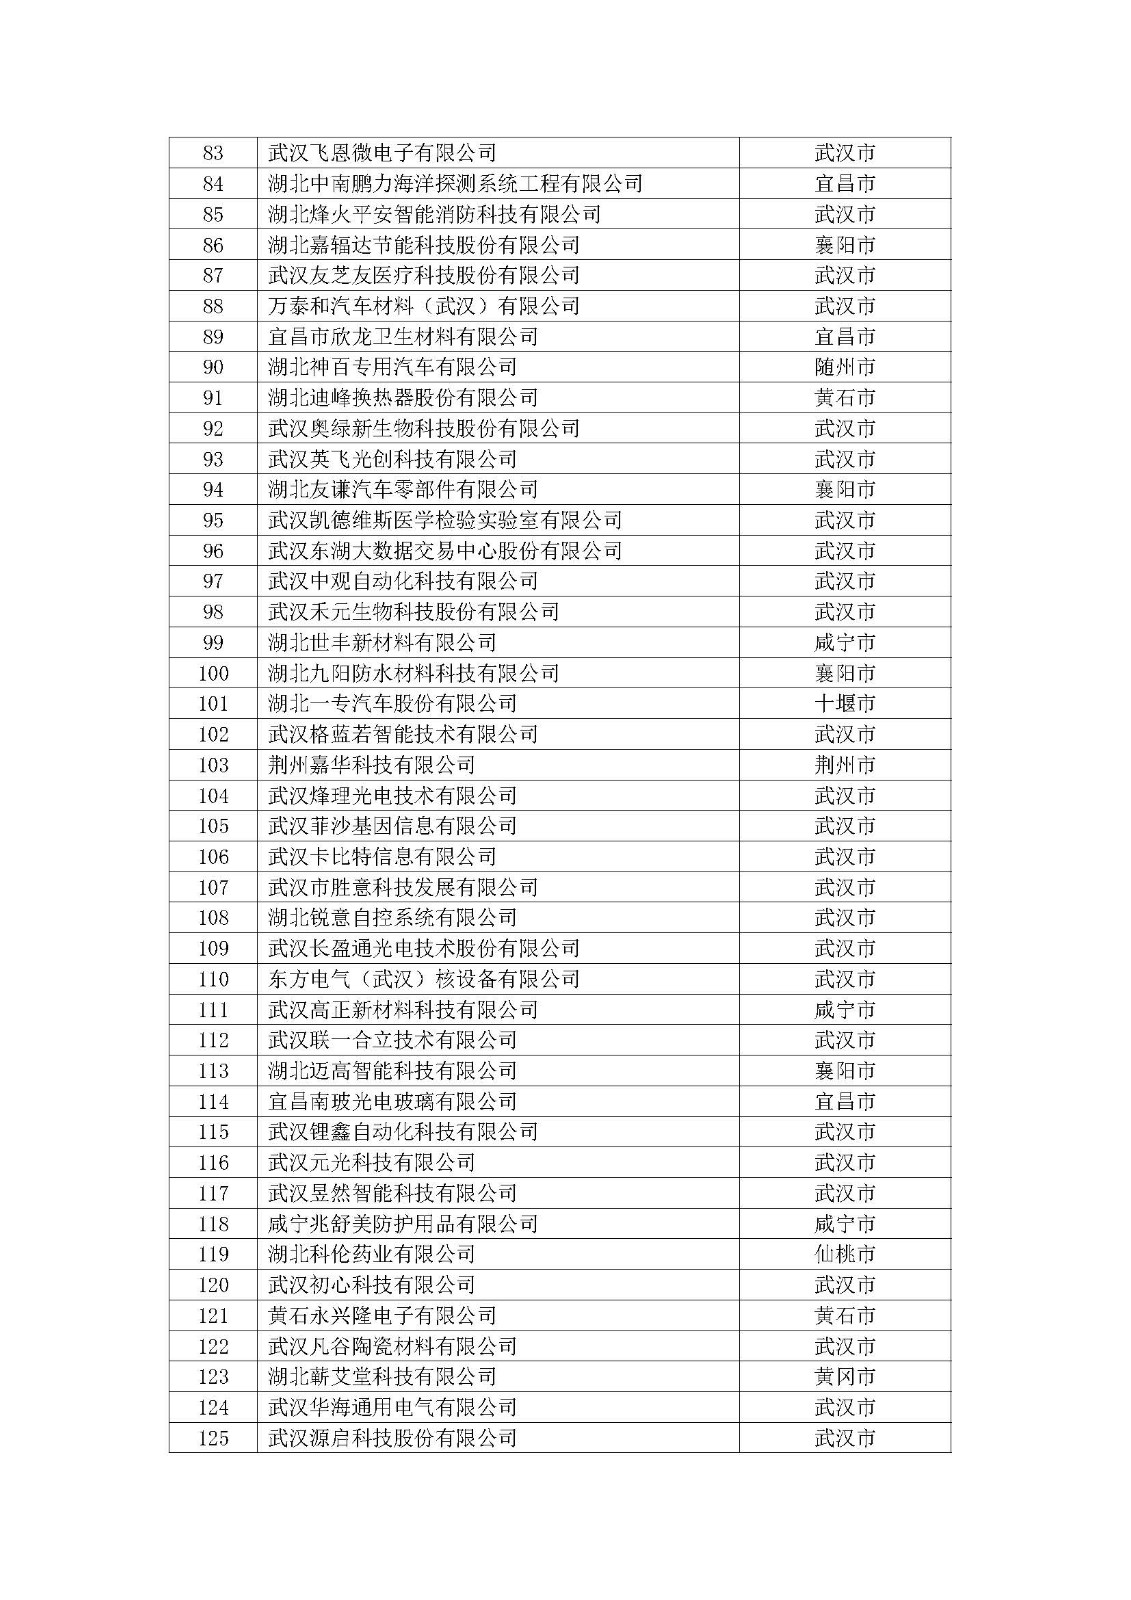 第一批拟入库湖北省科创“新物种”企业名单_页面_04.jpg